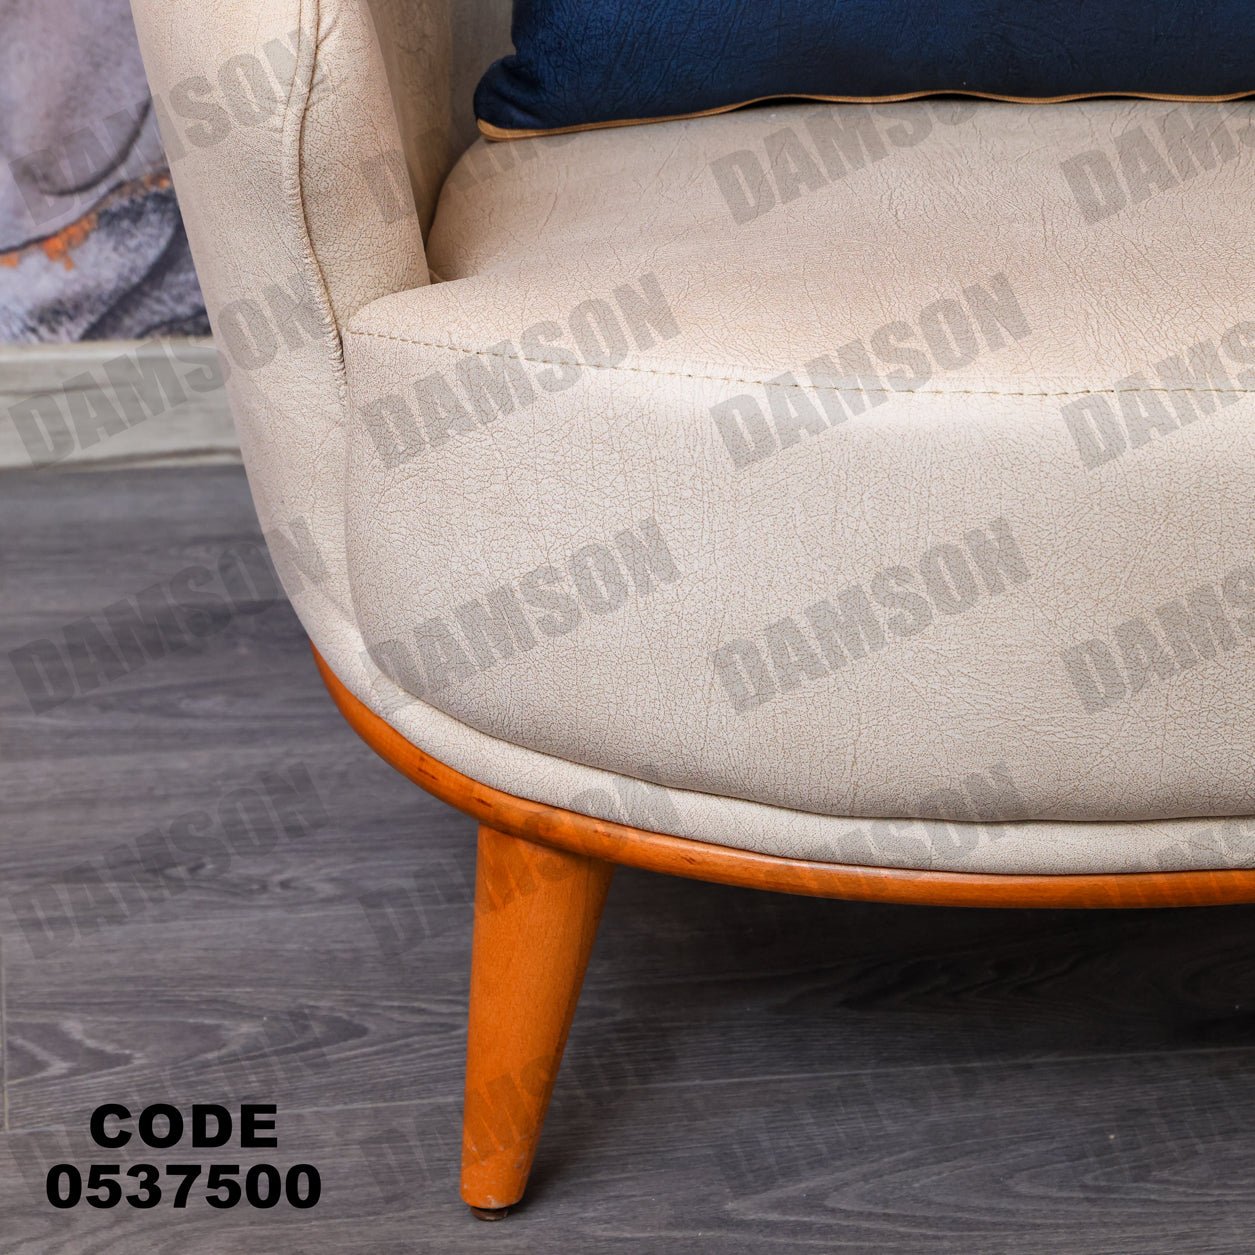 فوتية 1-375 - Damson Furnitureفوتية 1-375